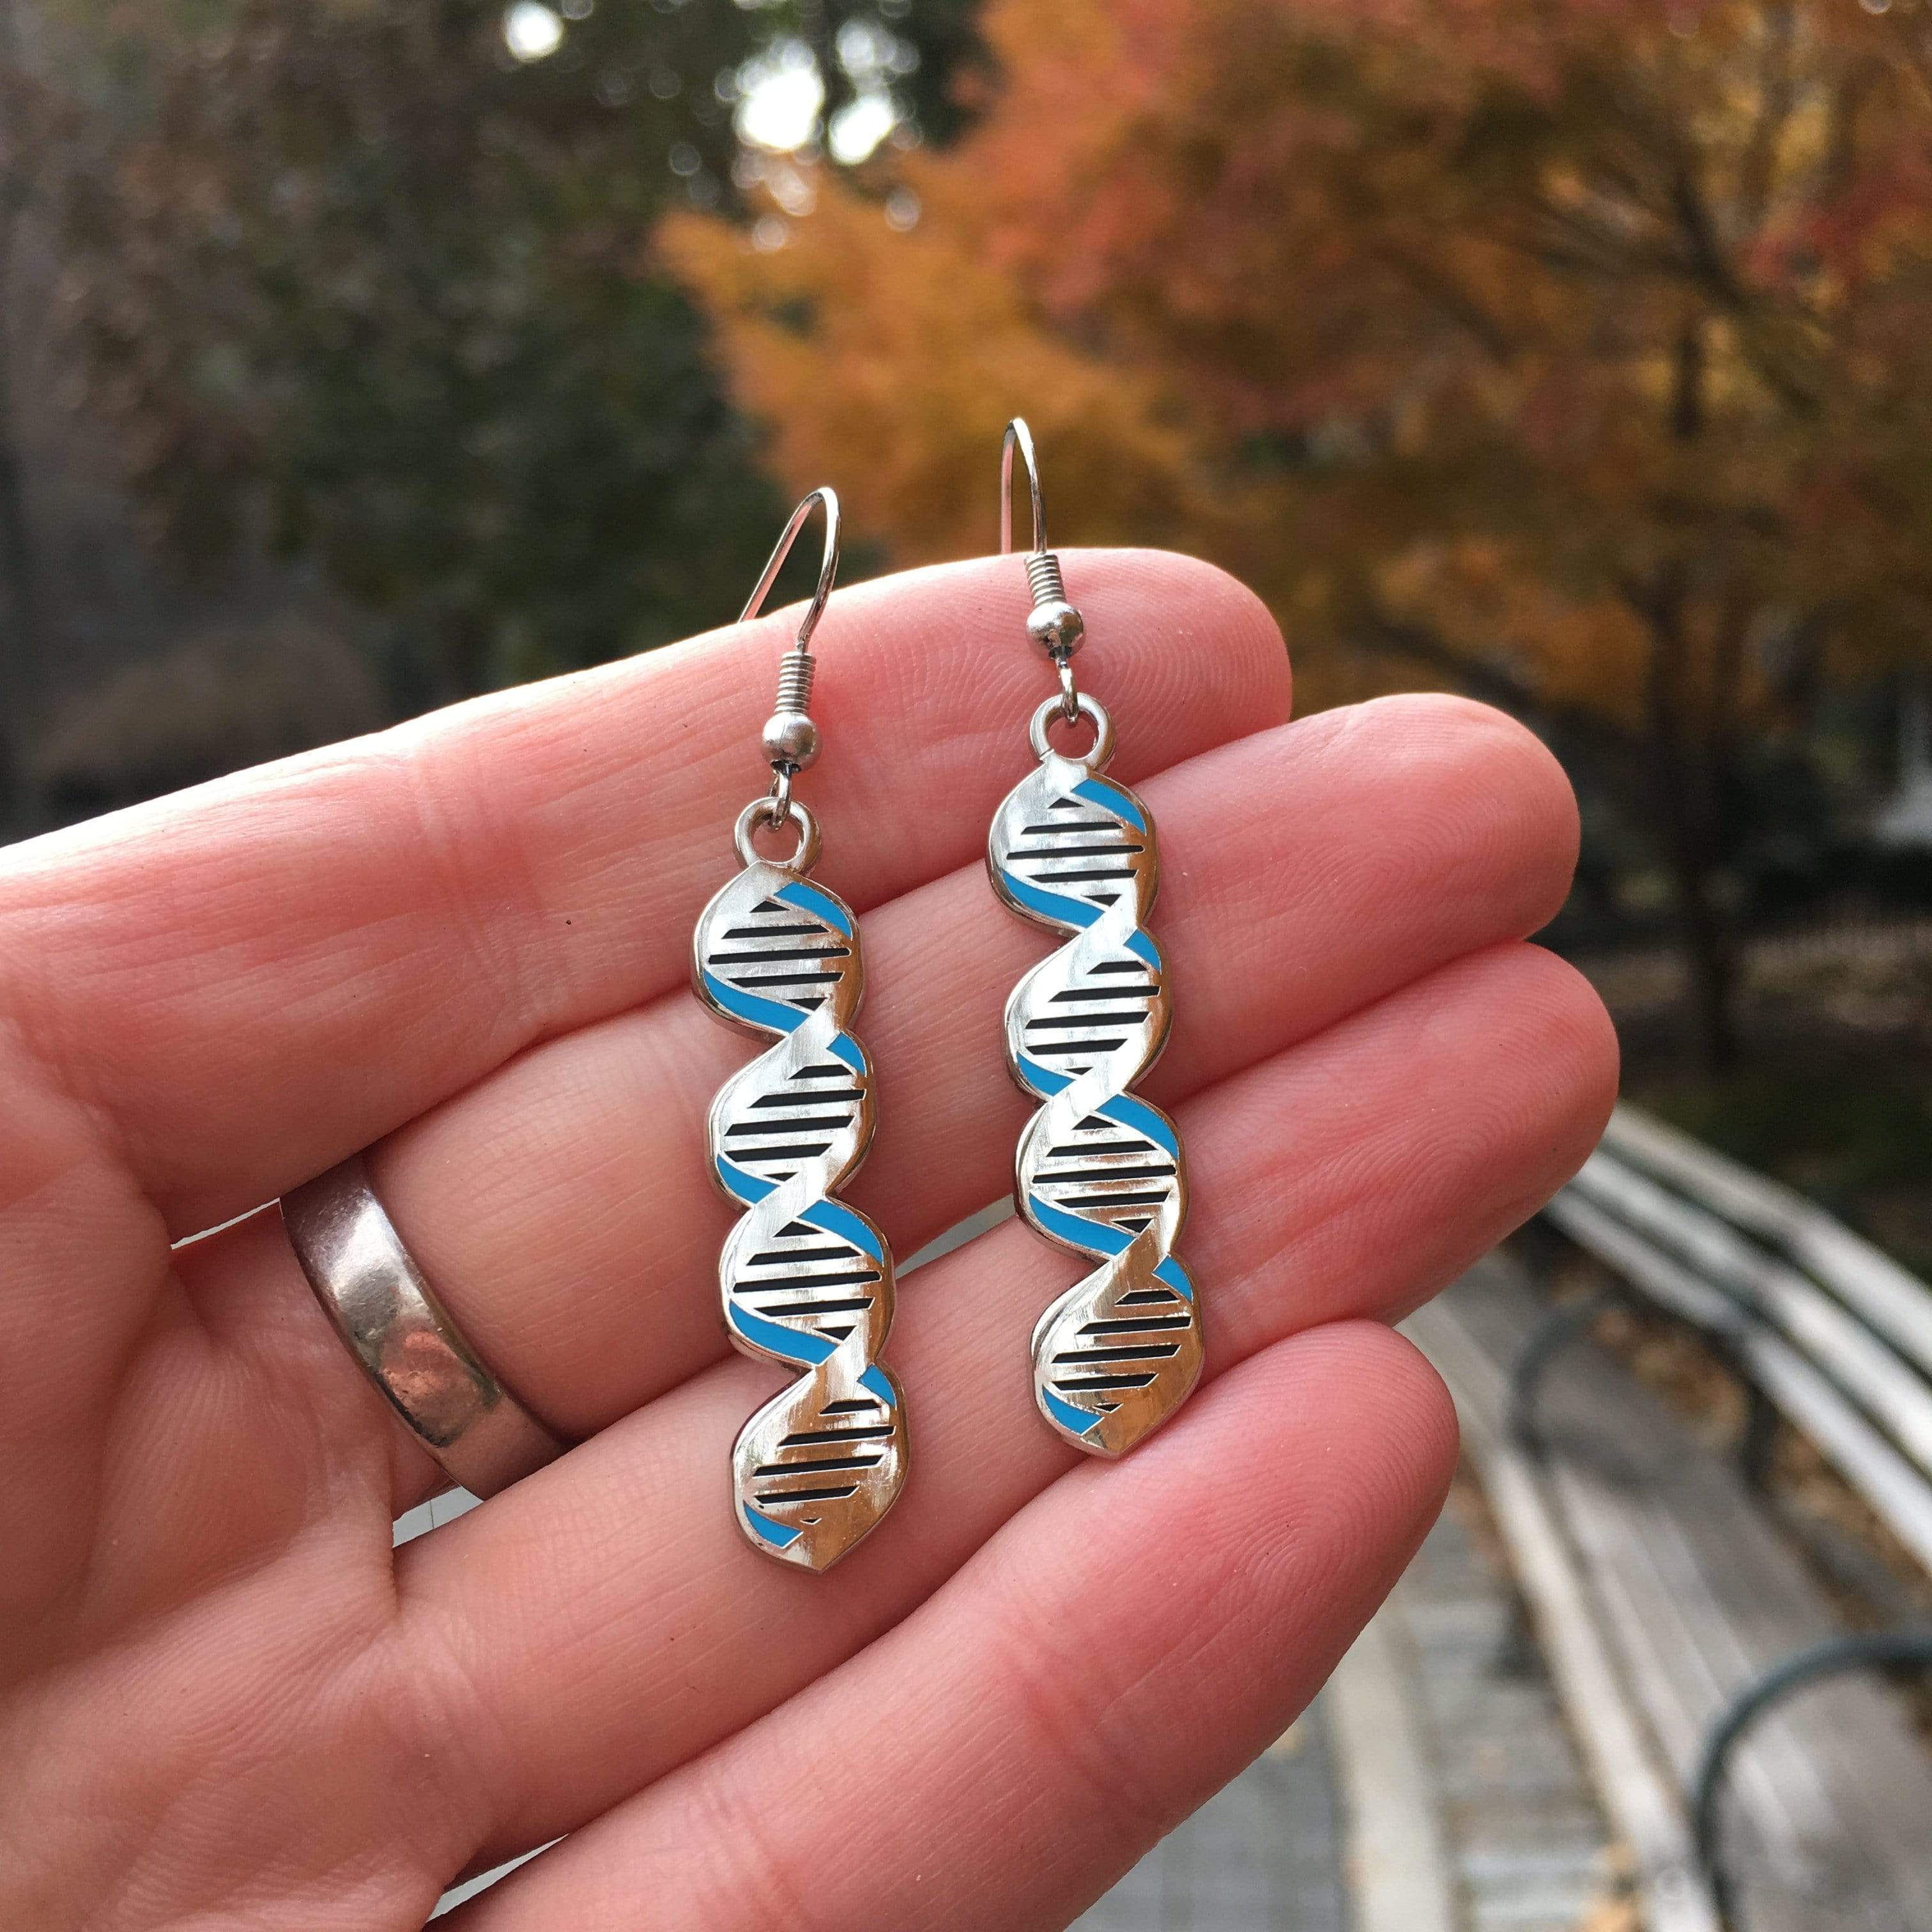 Rosalind Franklin / DNA Earrings